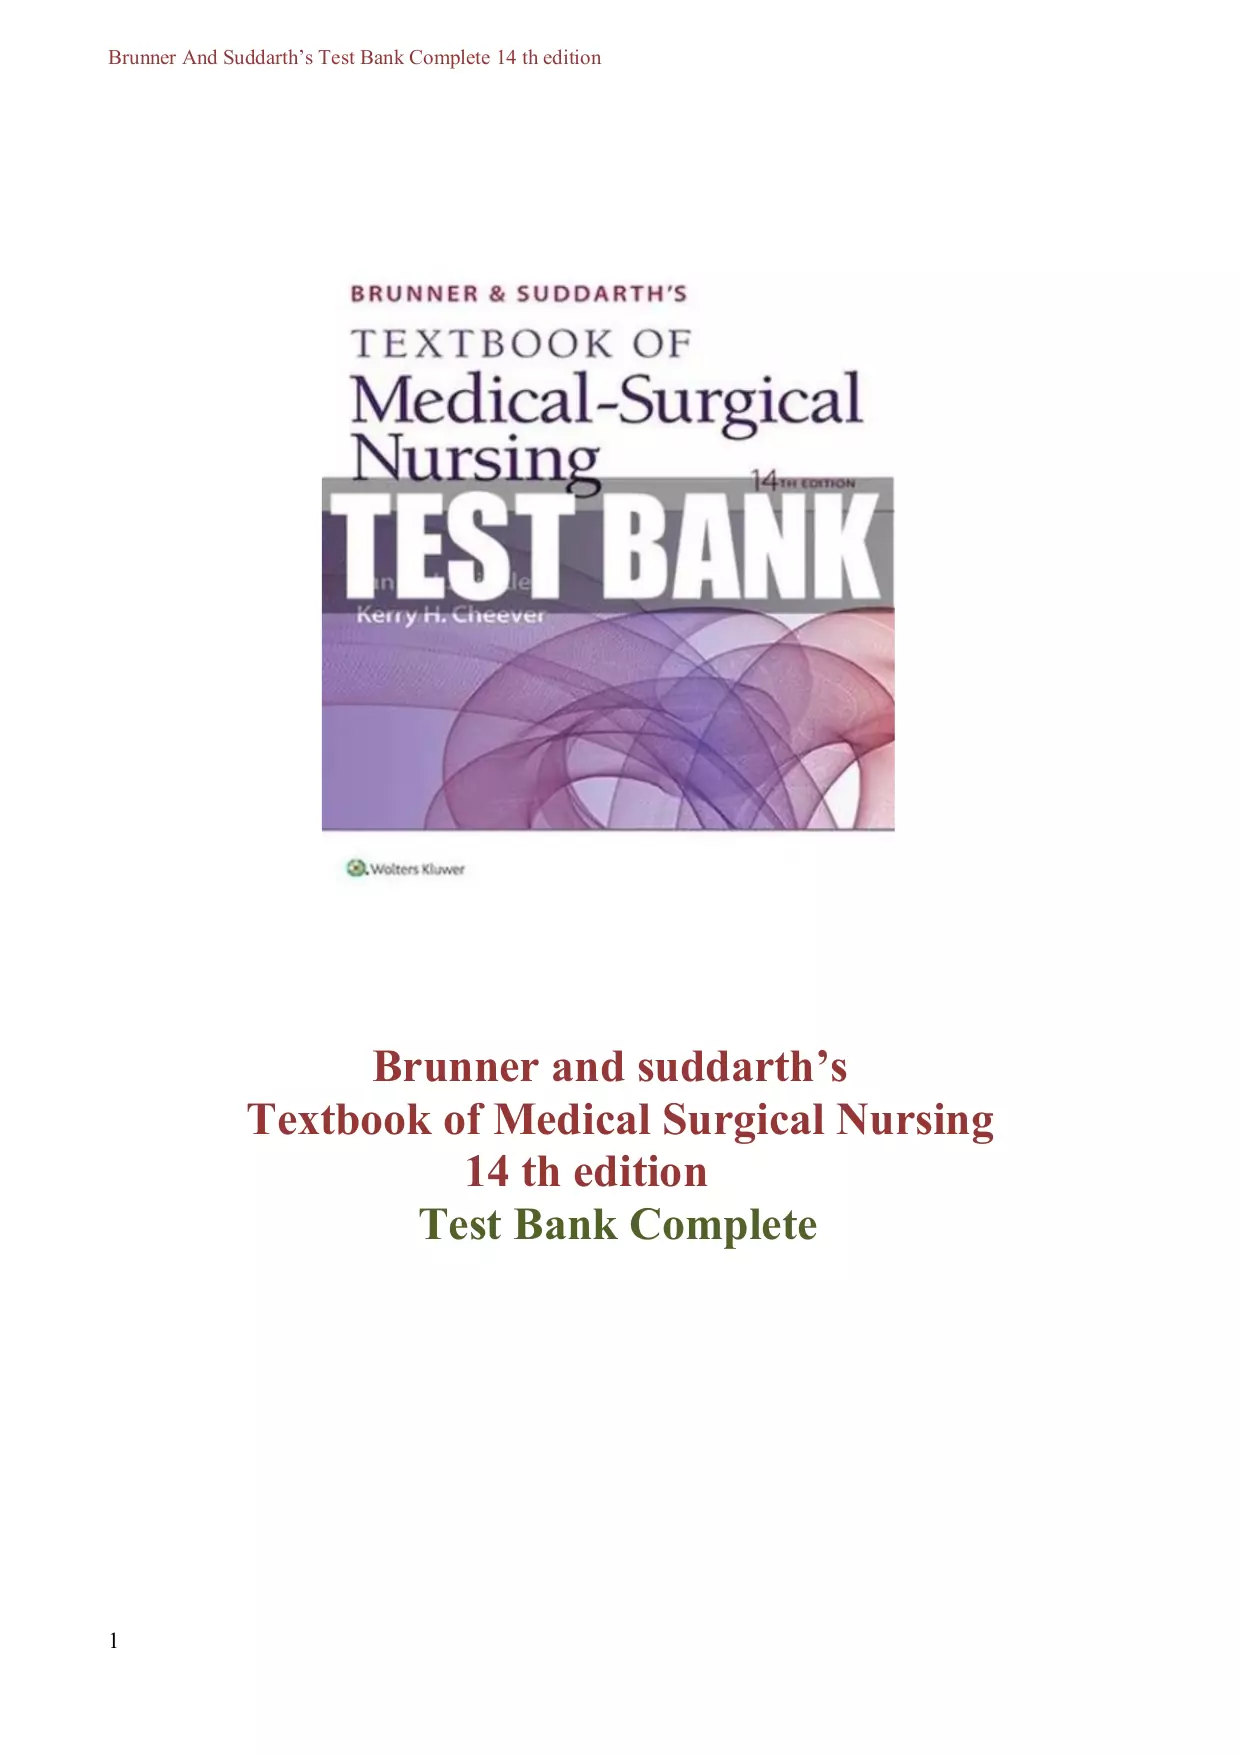 Brunner & Suddarth's Textbook of Medical-Surgical Nursing 14 